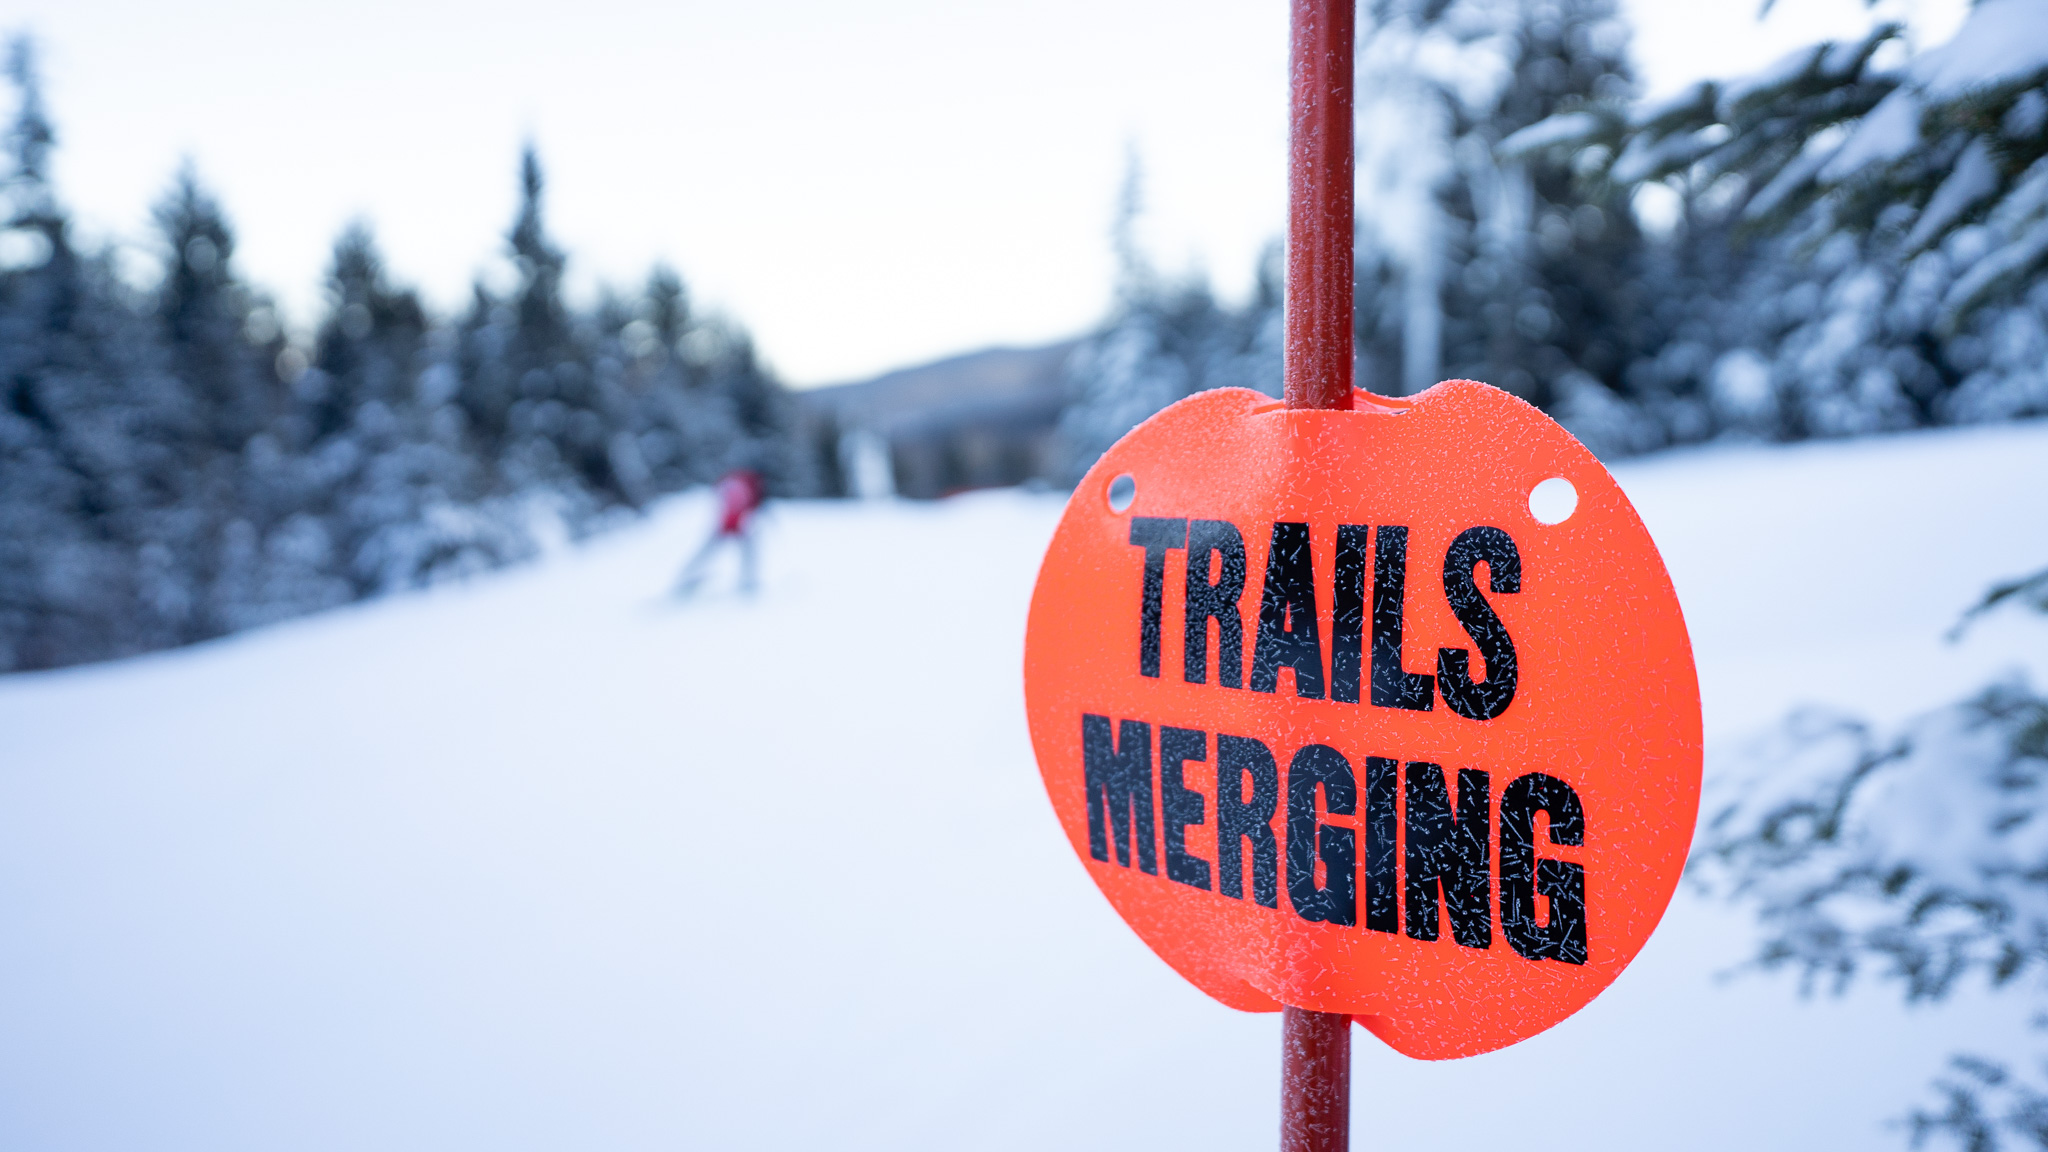 Trails merging sign